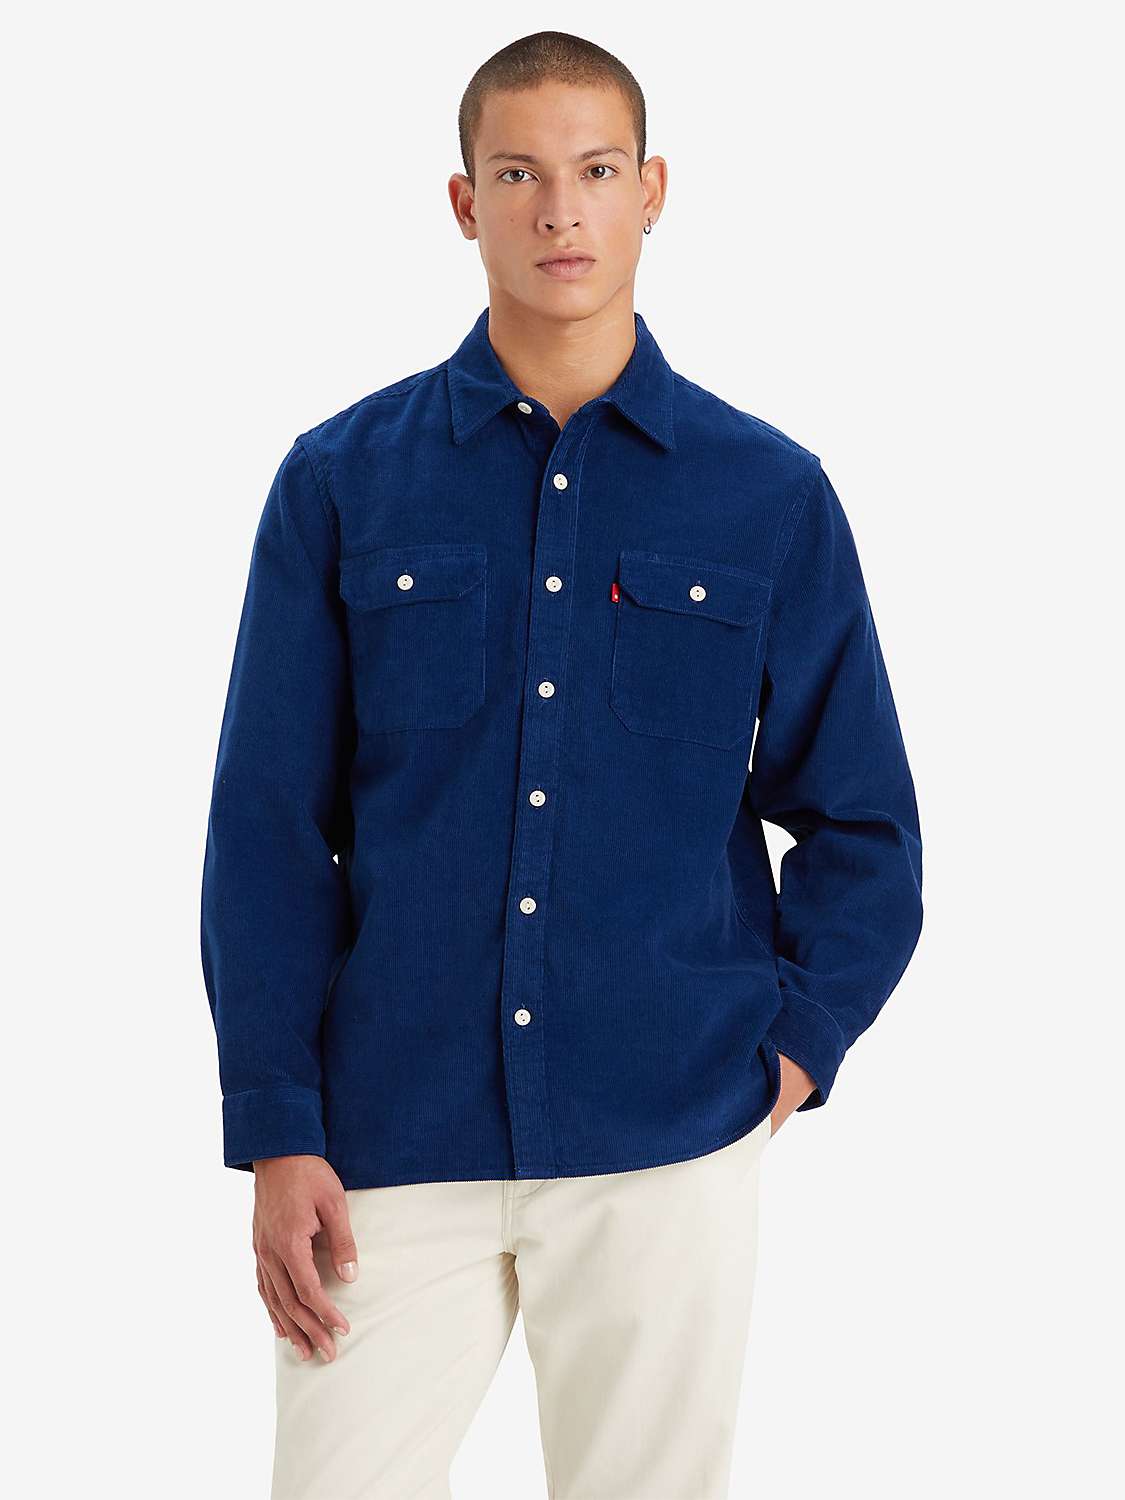 Buy Levi's Jackson Worker Overshirt, Estate Blue Online at johnlewis.com